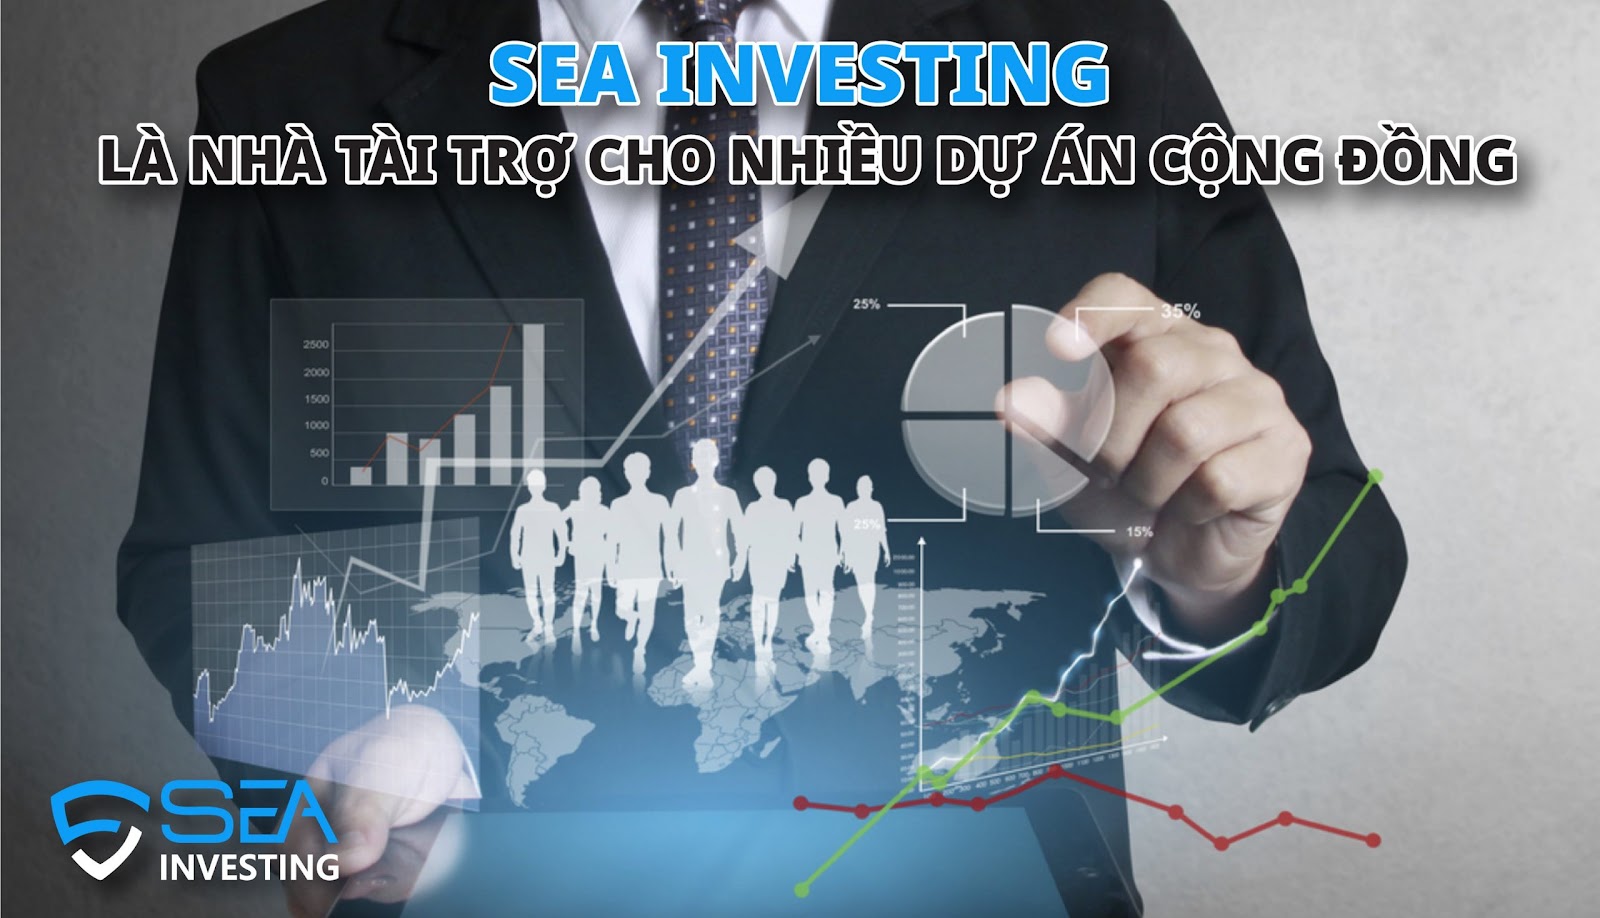 SEA Investing Việt Nam - Nhà Môi Giới Uy Tín Nhất Hiện Nay